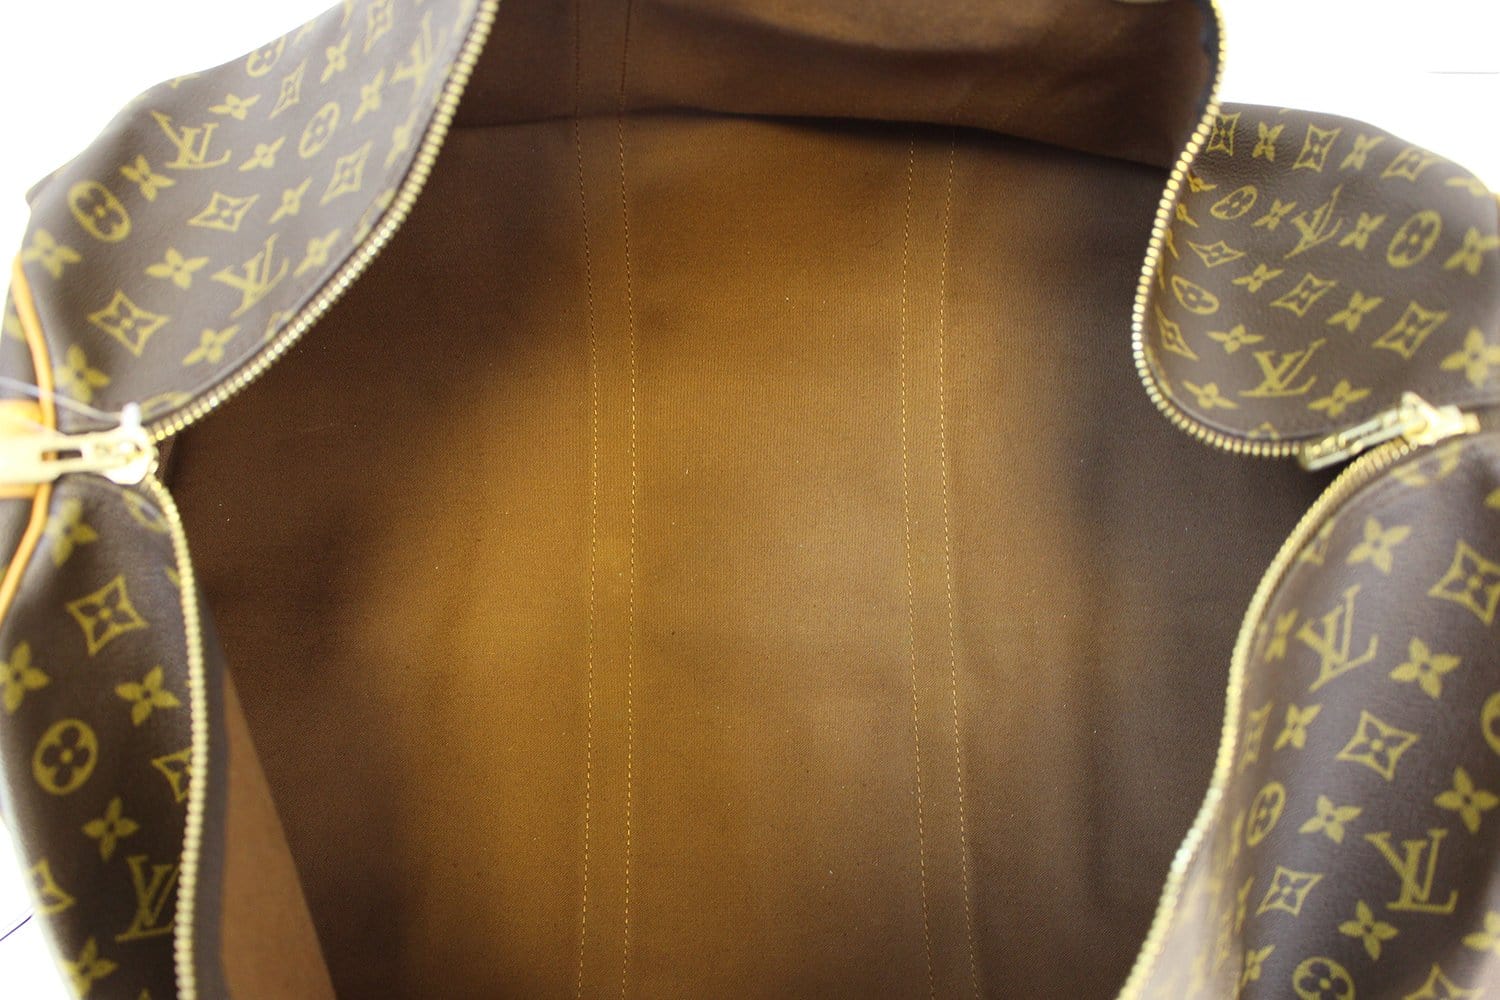 Lot - A Louis Vuitton monogram canvas suit carrier 60 with